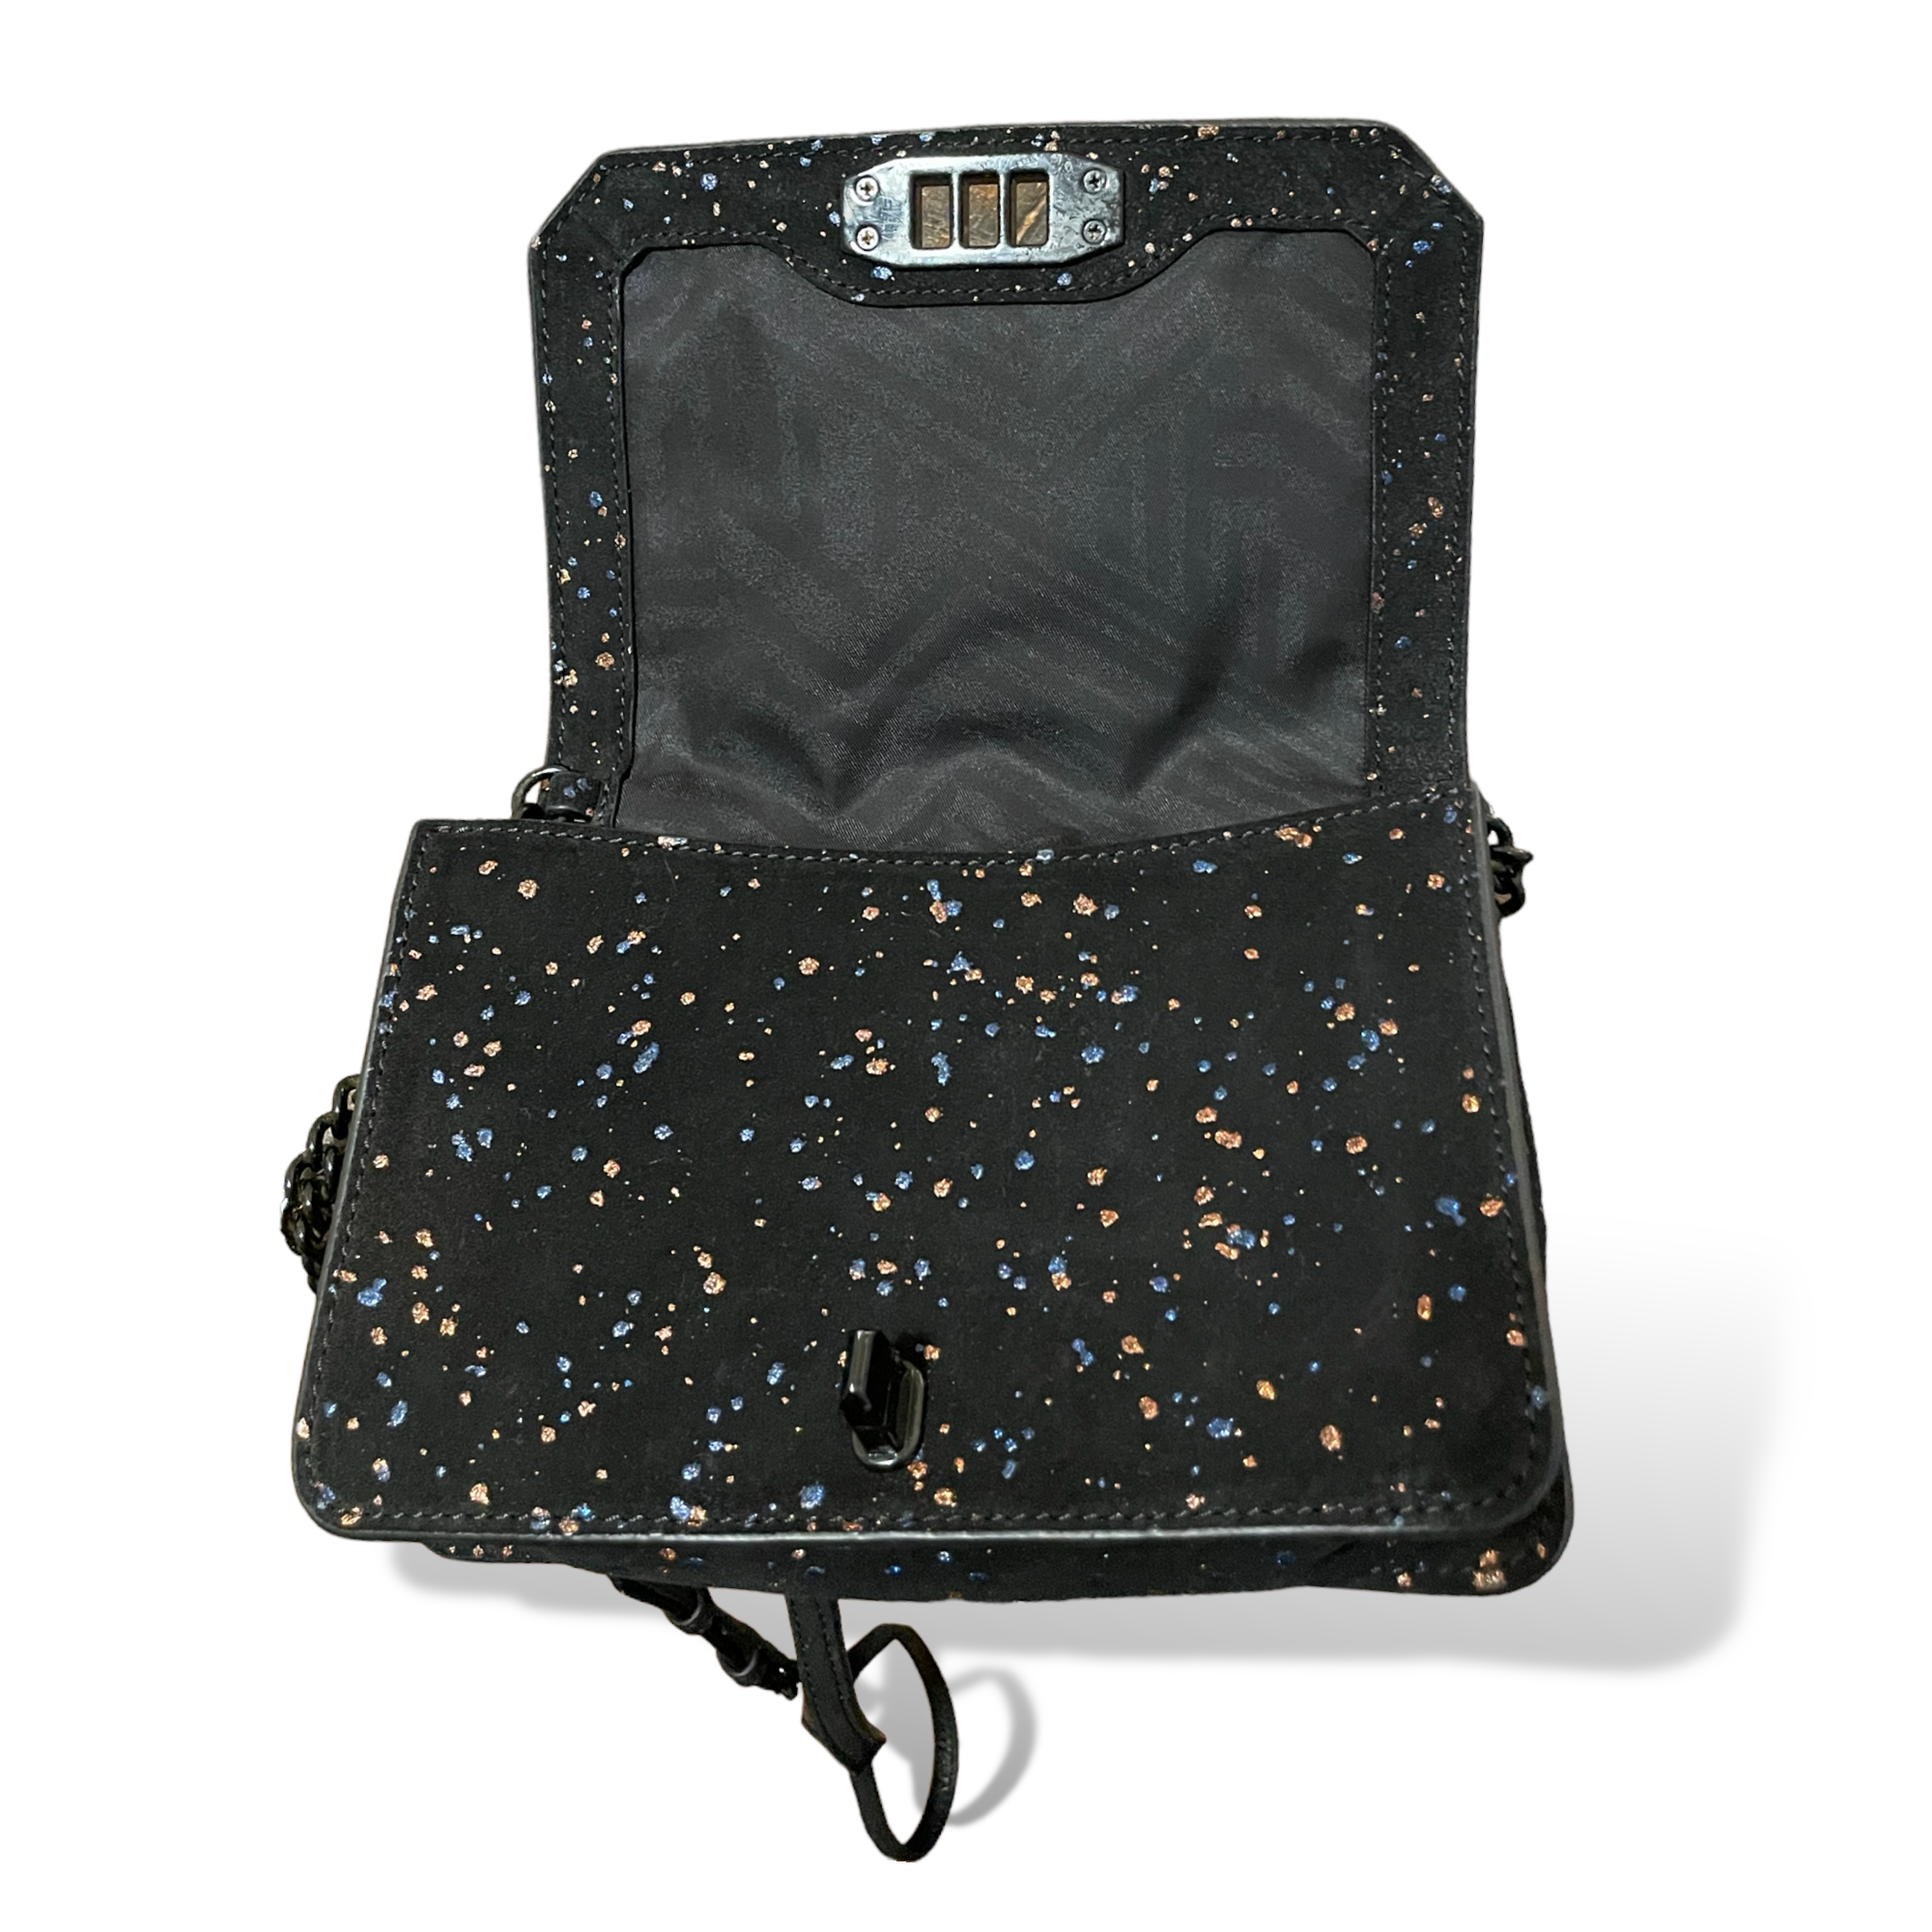 Rebecca Minkoff Black Hardware & Suede Crossbody Bag with Cobalt Blue & Rose Gold Splatter